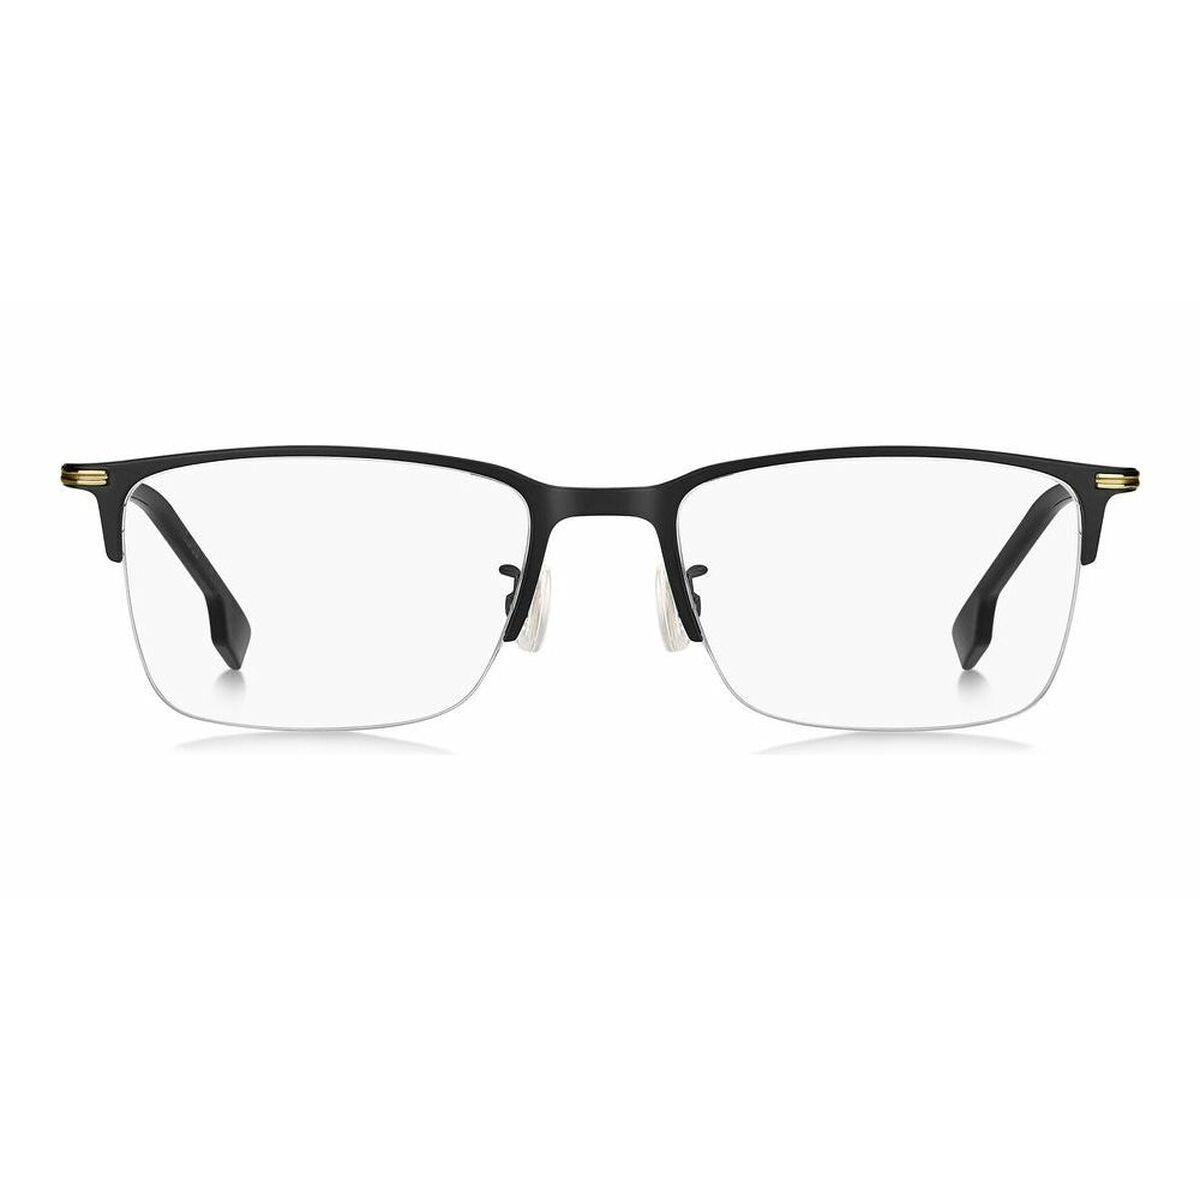 Kaufe Herrensonnenbrille Hugo Boss BOSS 1616_F bei AWK Flagship um € 192.00